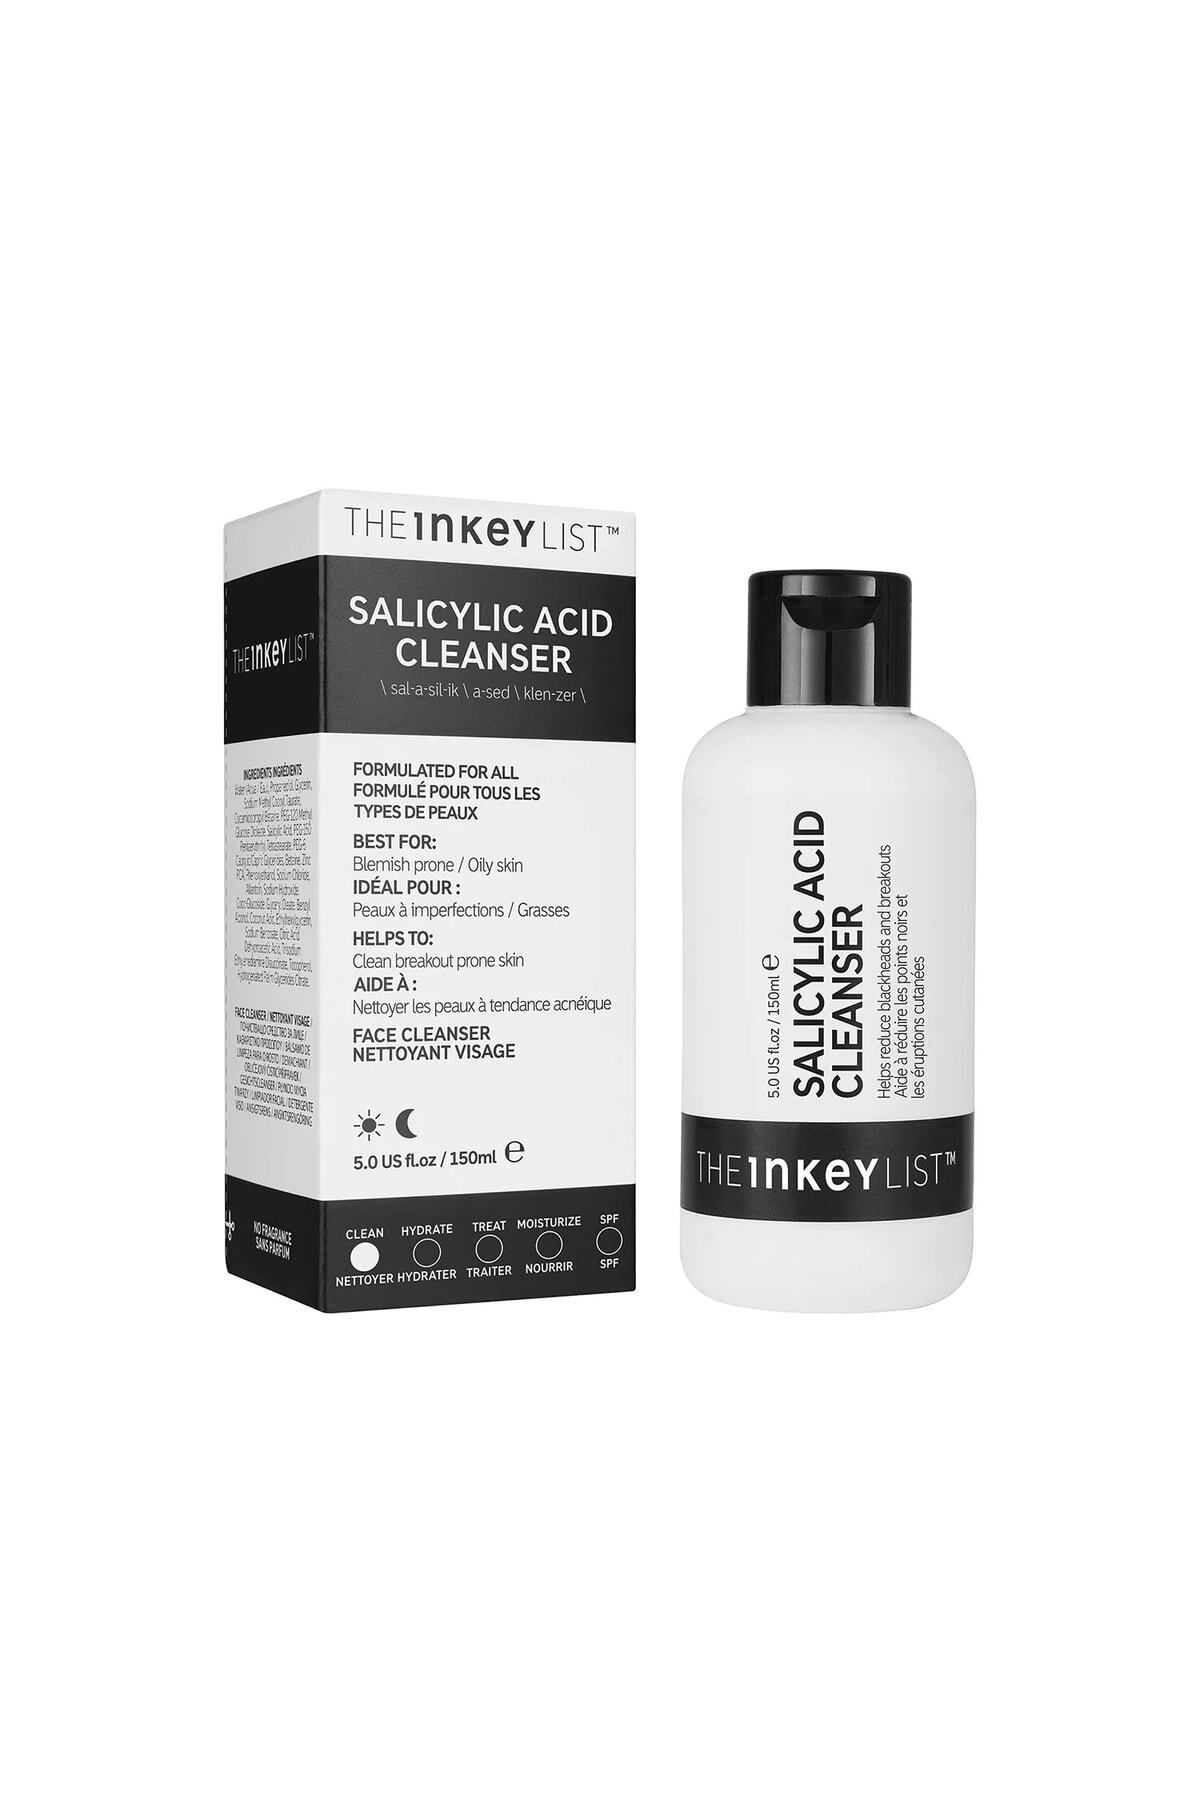 THE INKEY LIST Salicylic Acid Cleanser Acne Anti-Acne Salicylic Acid Facial Cleanser 150ml Renewal93